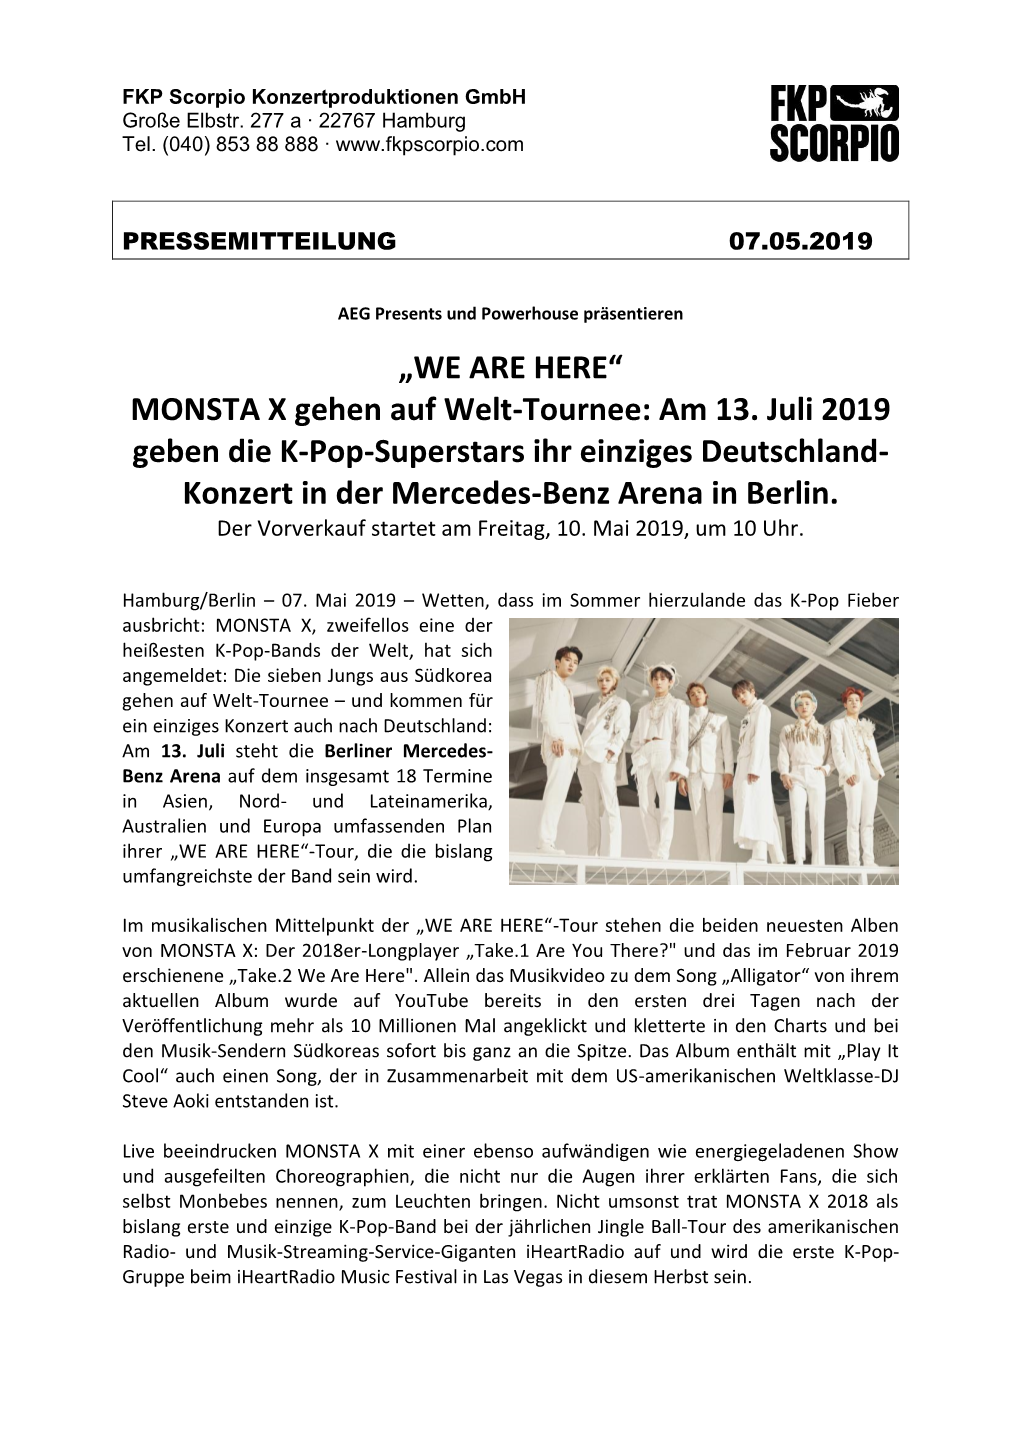 MONSTA X Gehen Auf Welt-Tournee: Am 13